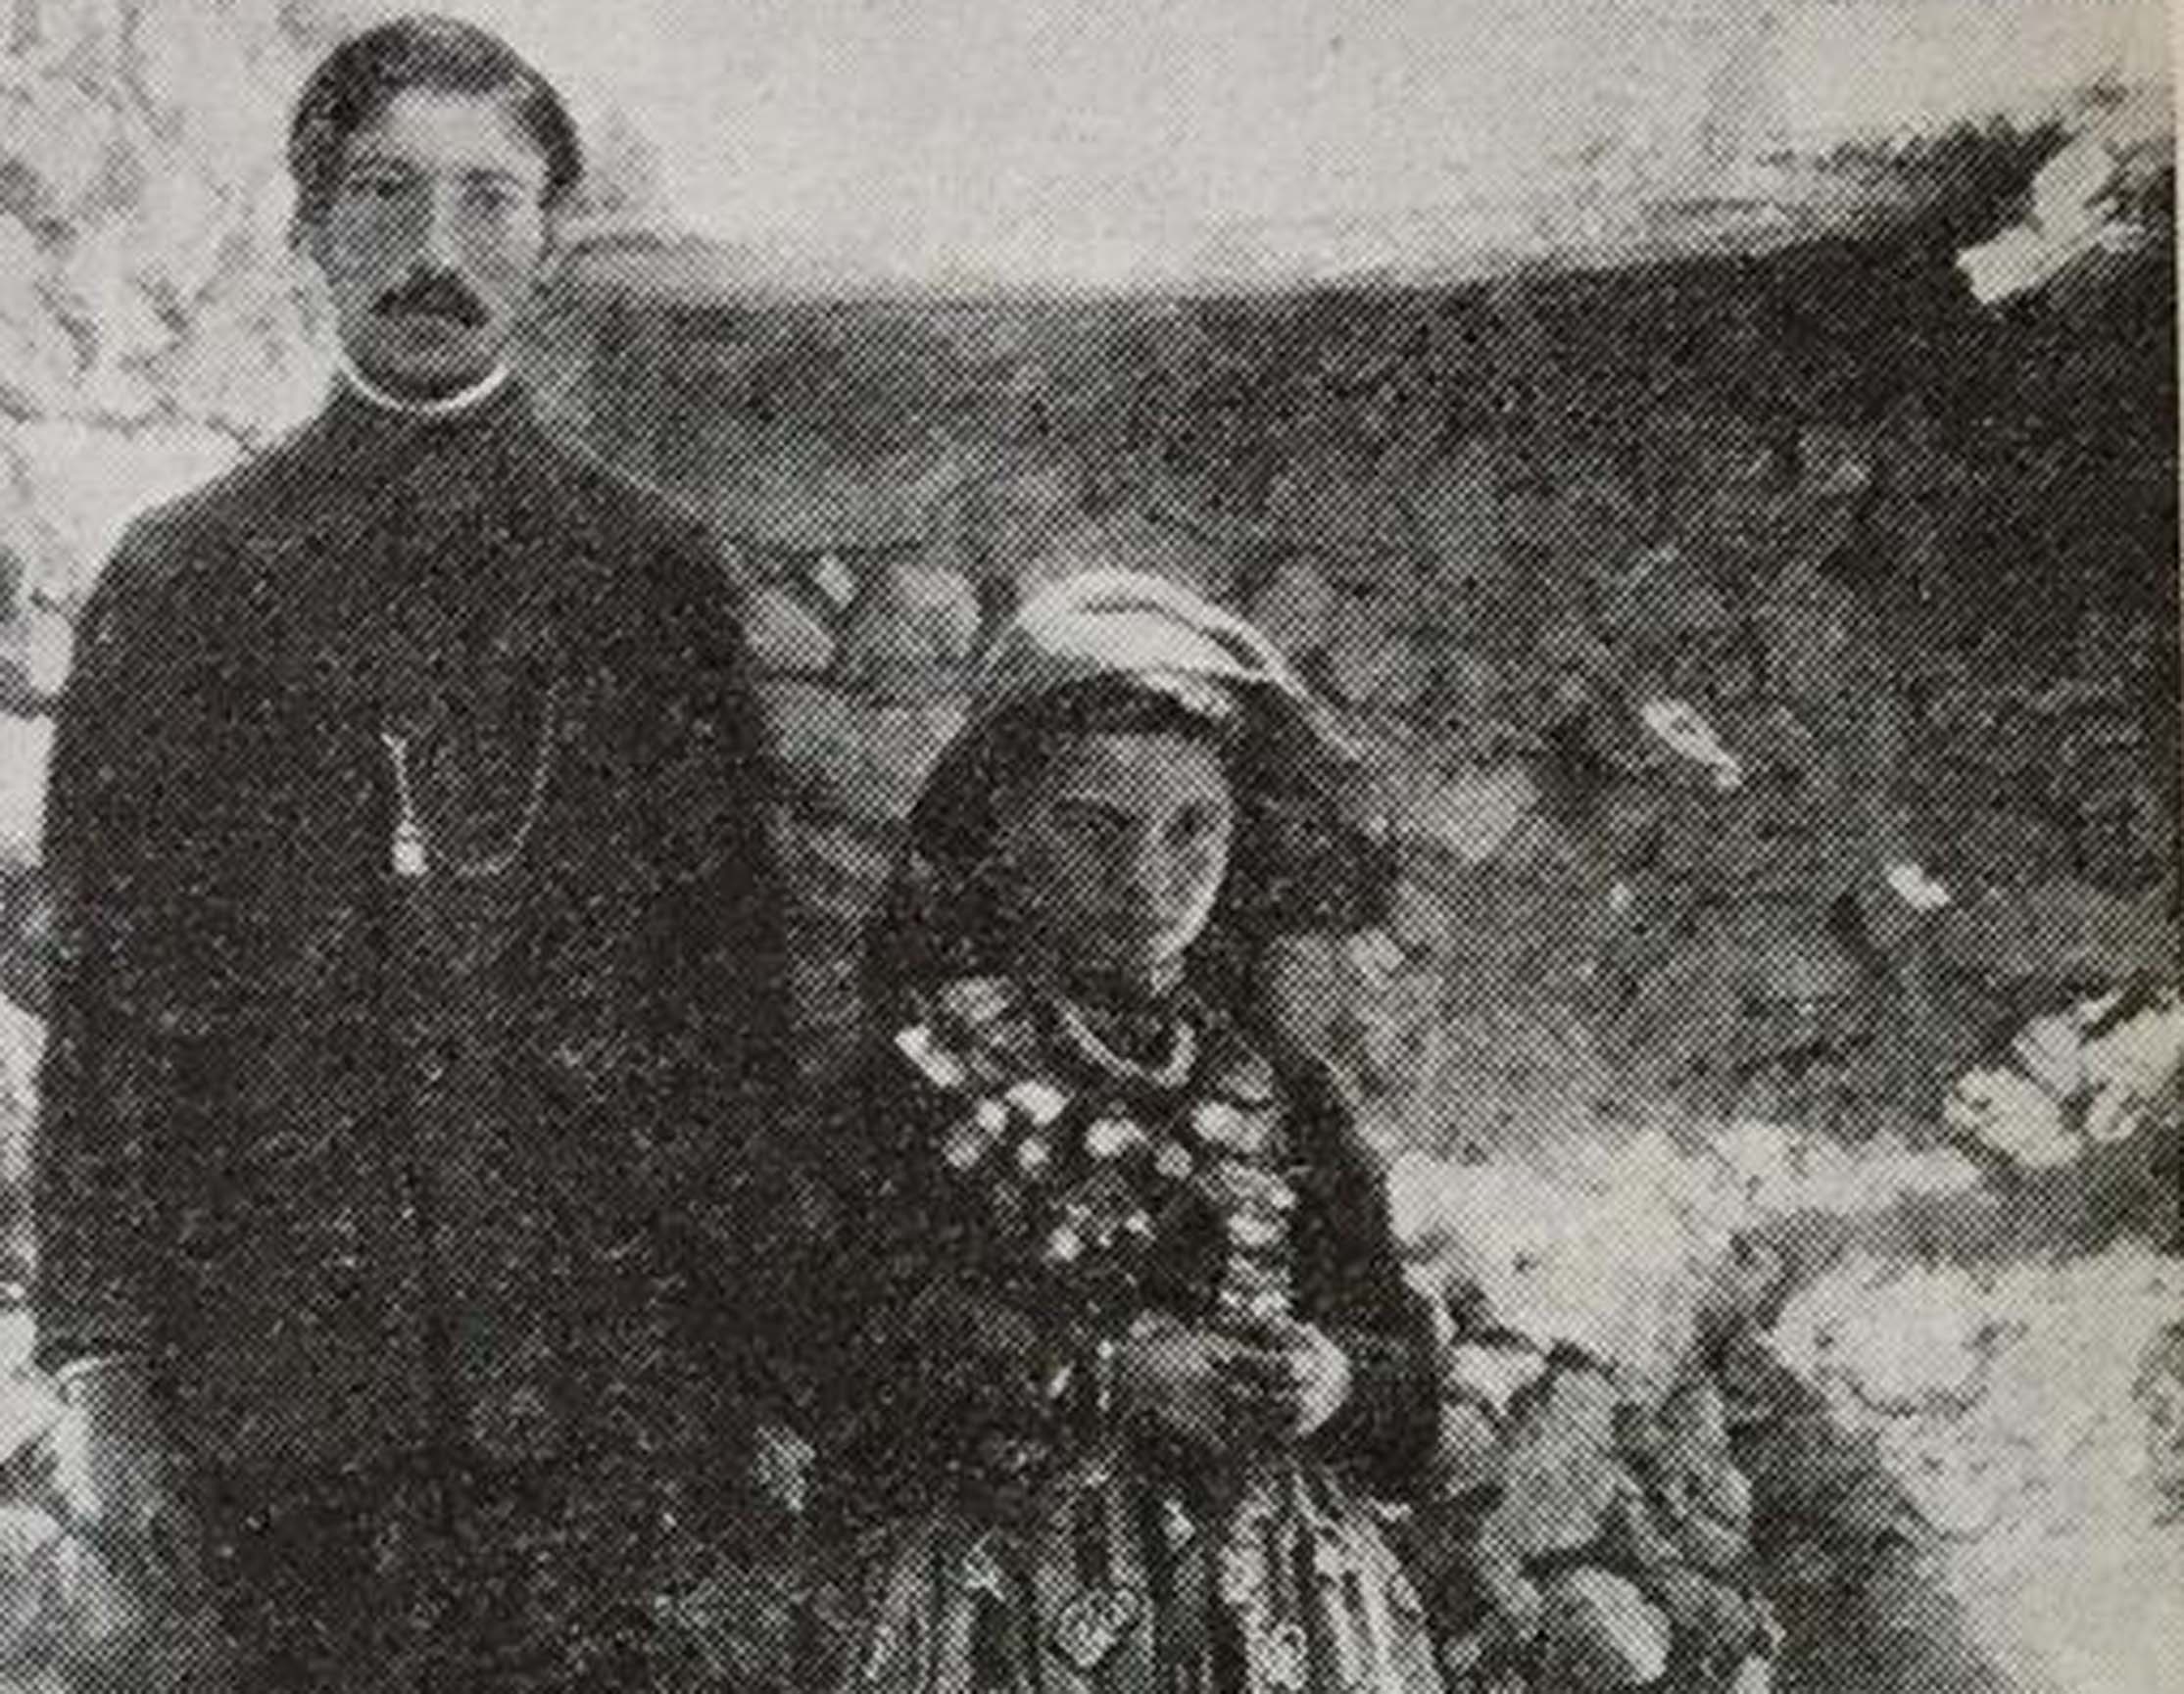 Iosef Abgarovich Orbeli’nin kitabında yayınladığı resim: Ermeni çift, damat 19, gelin 11 yaşında